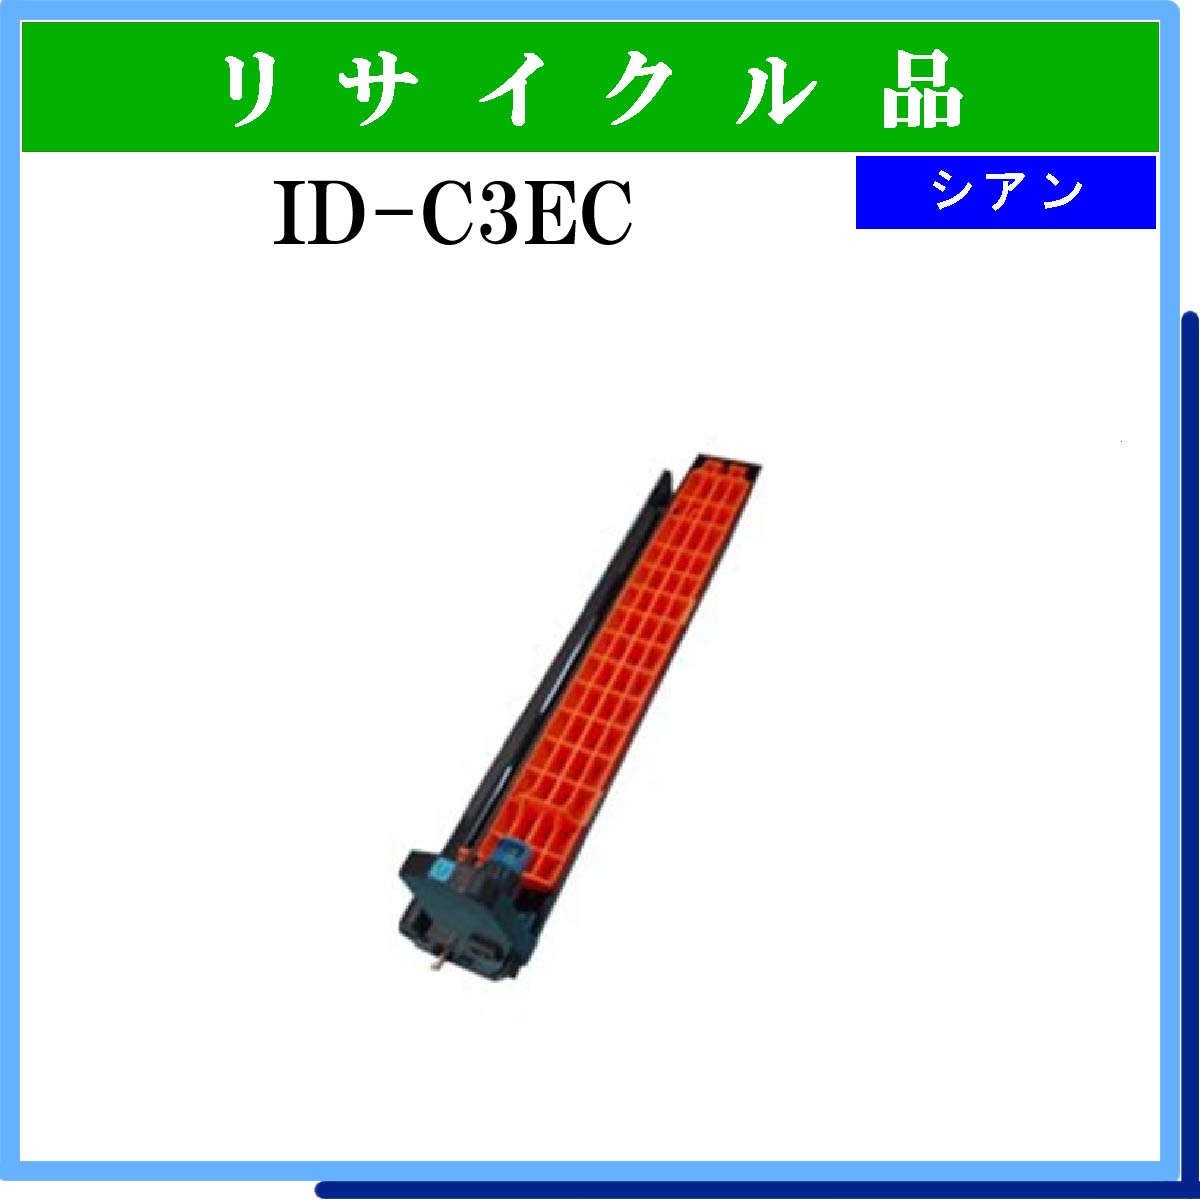 ID-C3EC